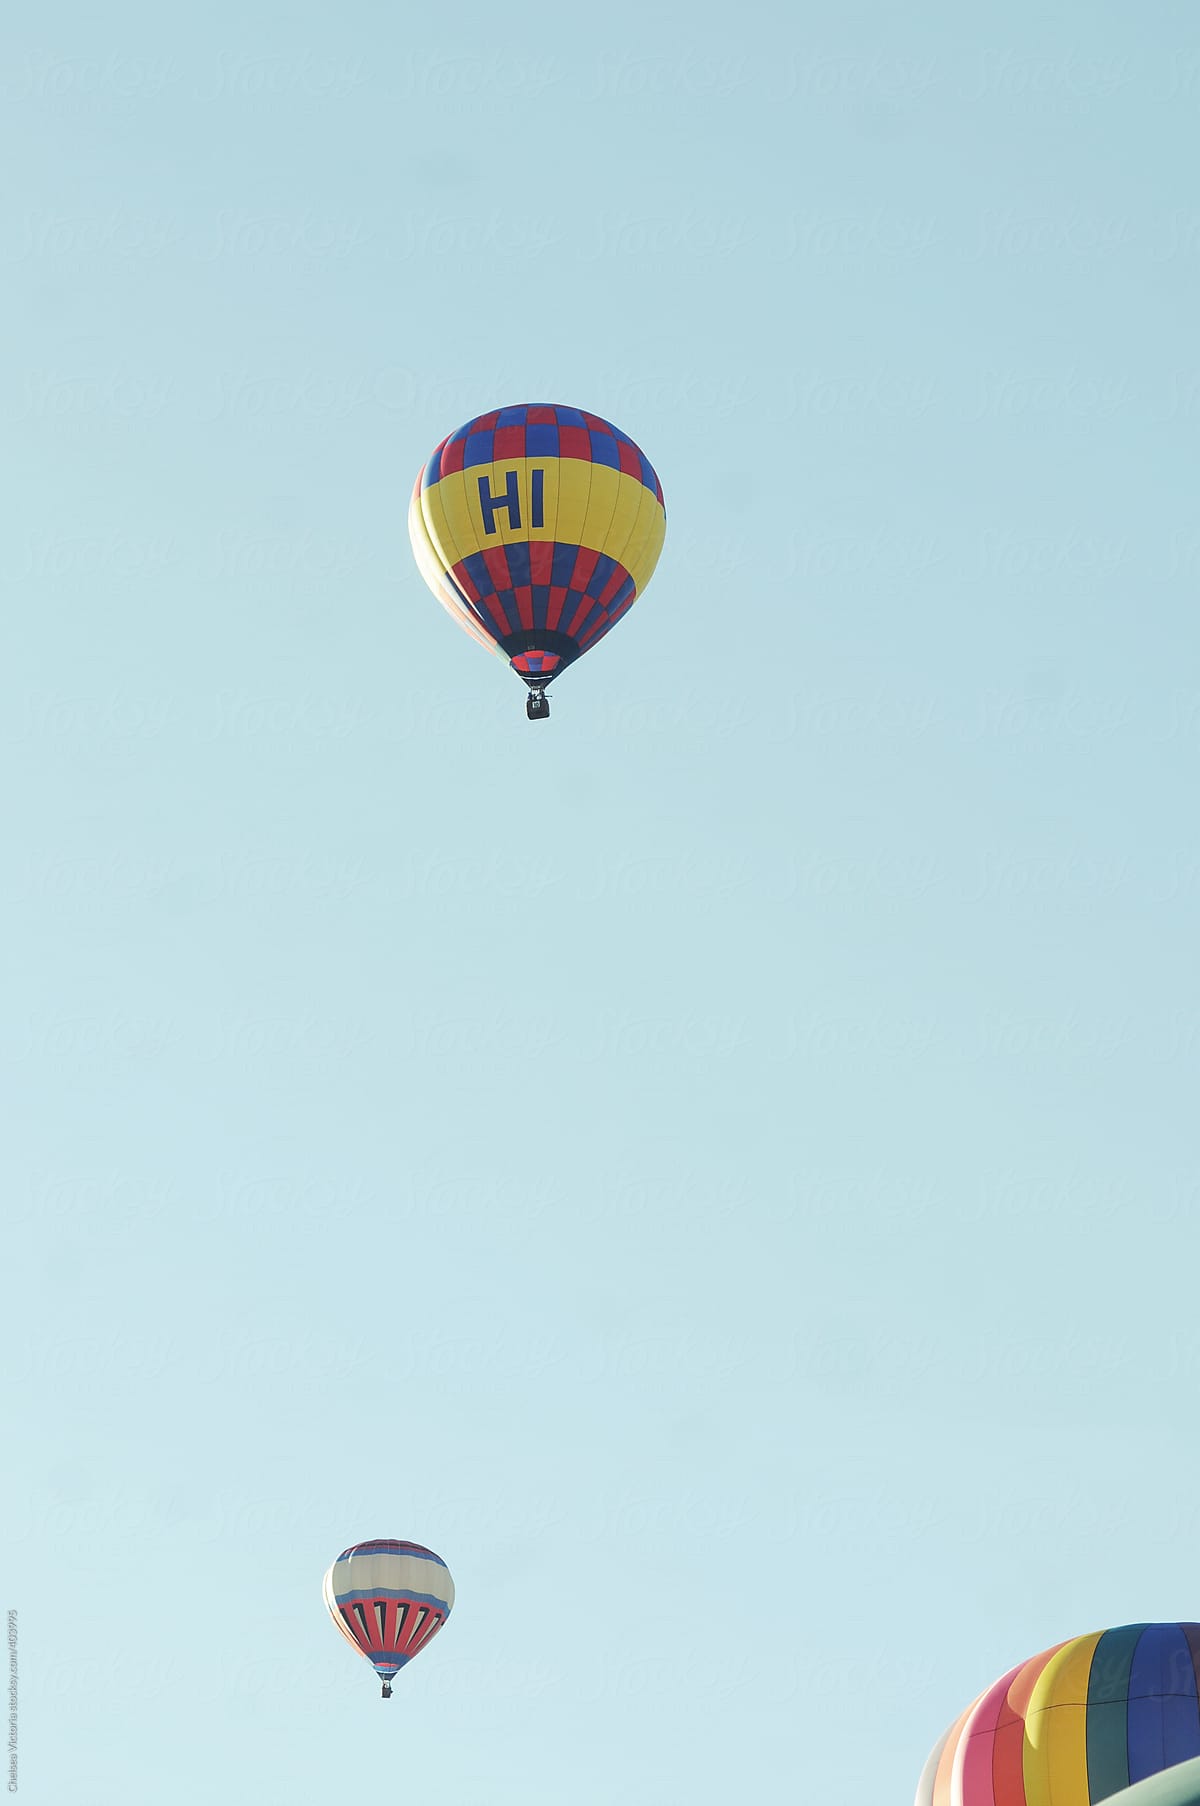 Hot air balloon that says hi